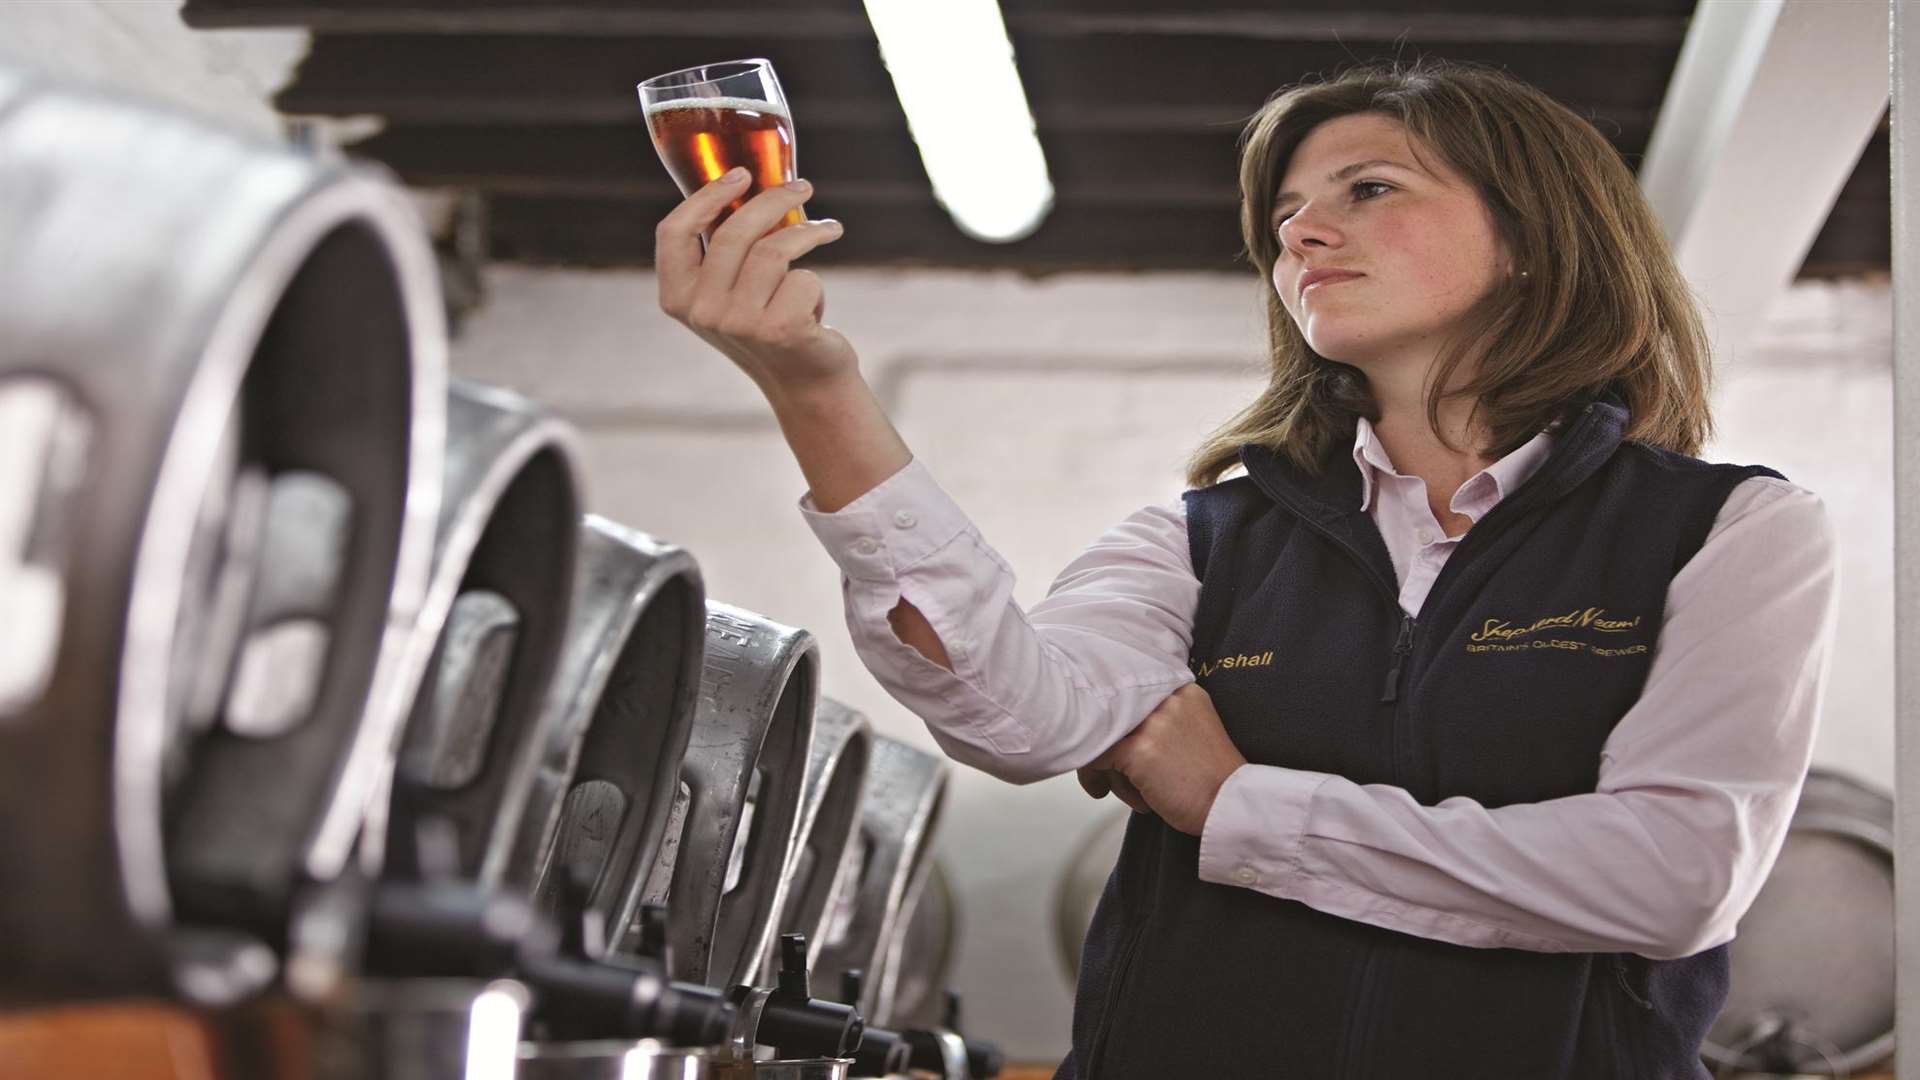 Laboratory manager Sarah Marshall checks the beer